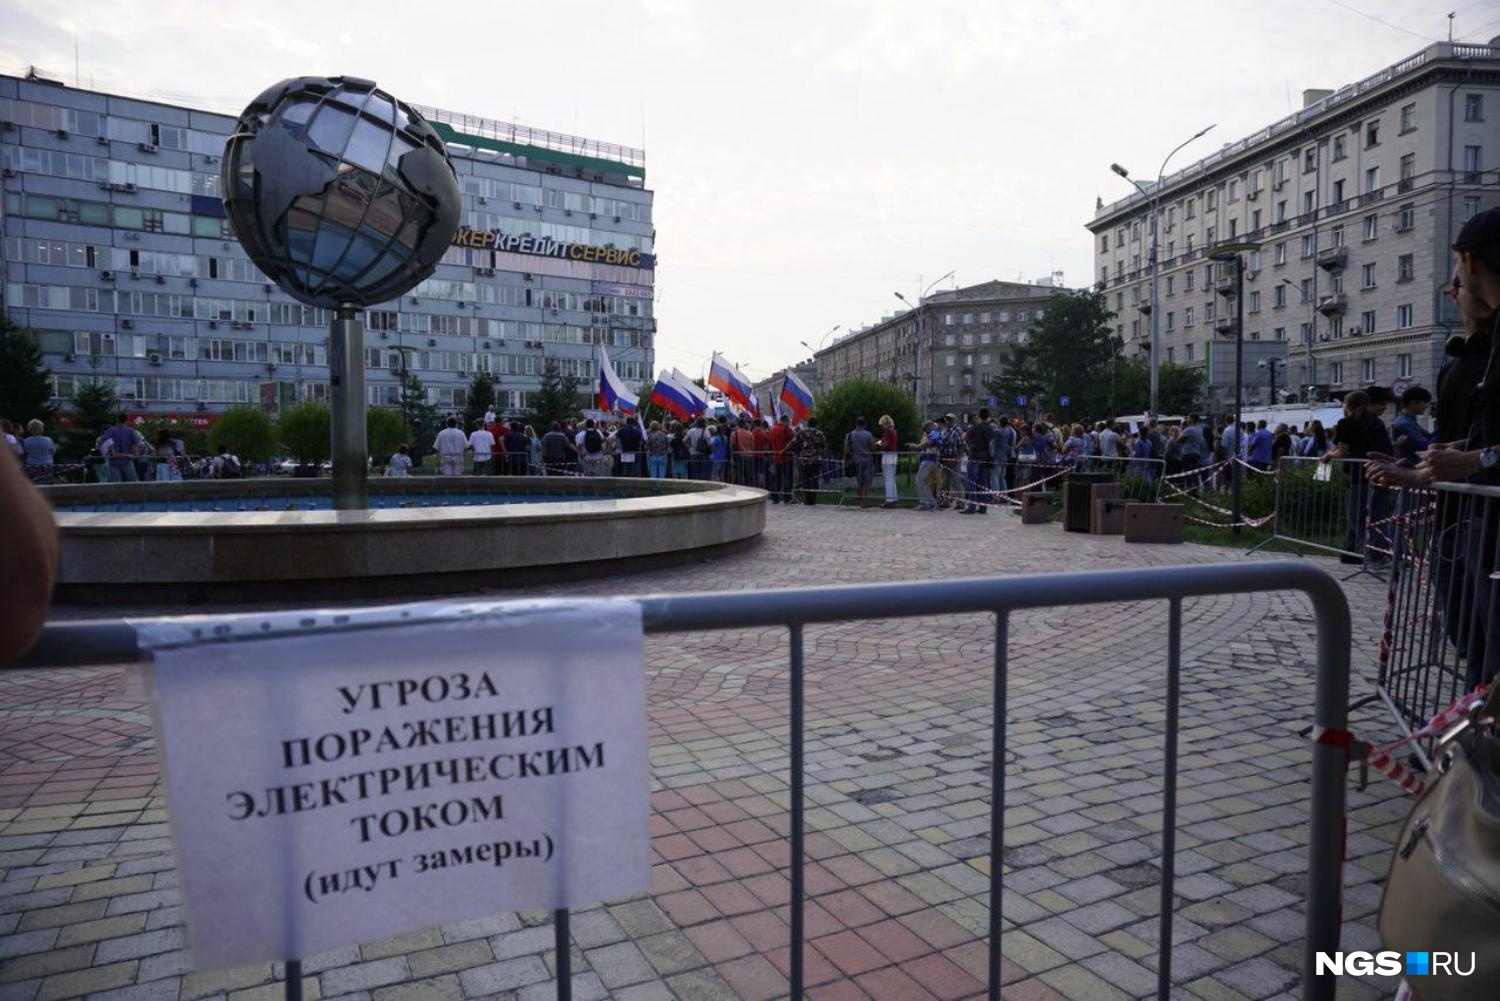 Митинг против повышения пенсионного возраста в Новосибирске. Фото Александра Ощепкова